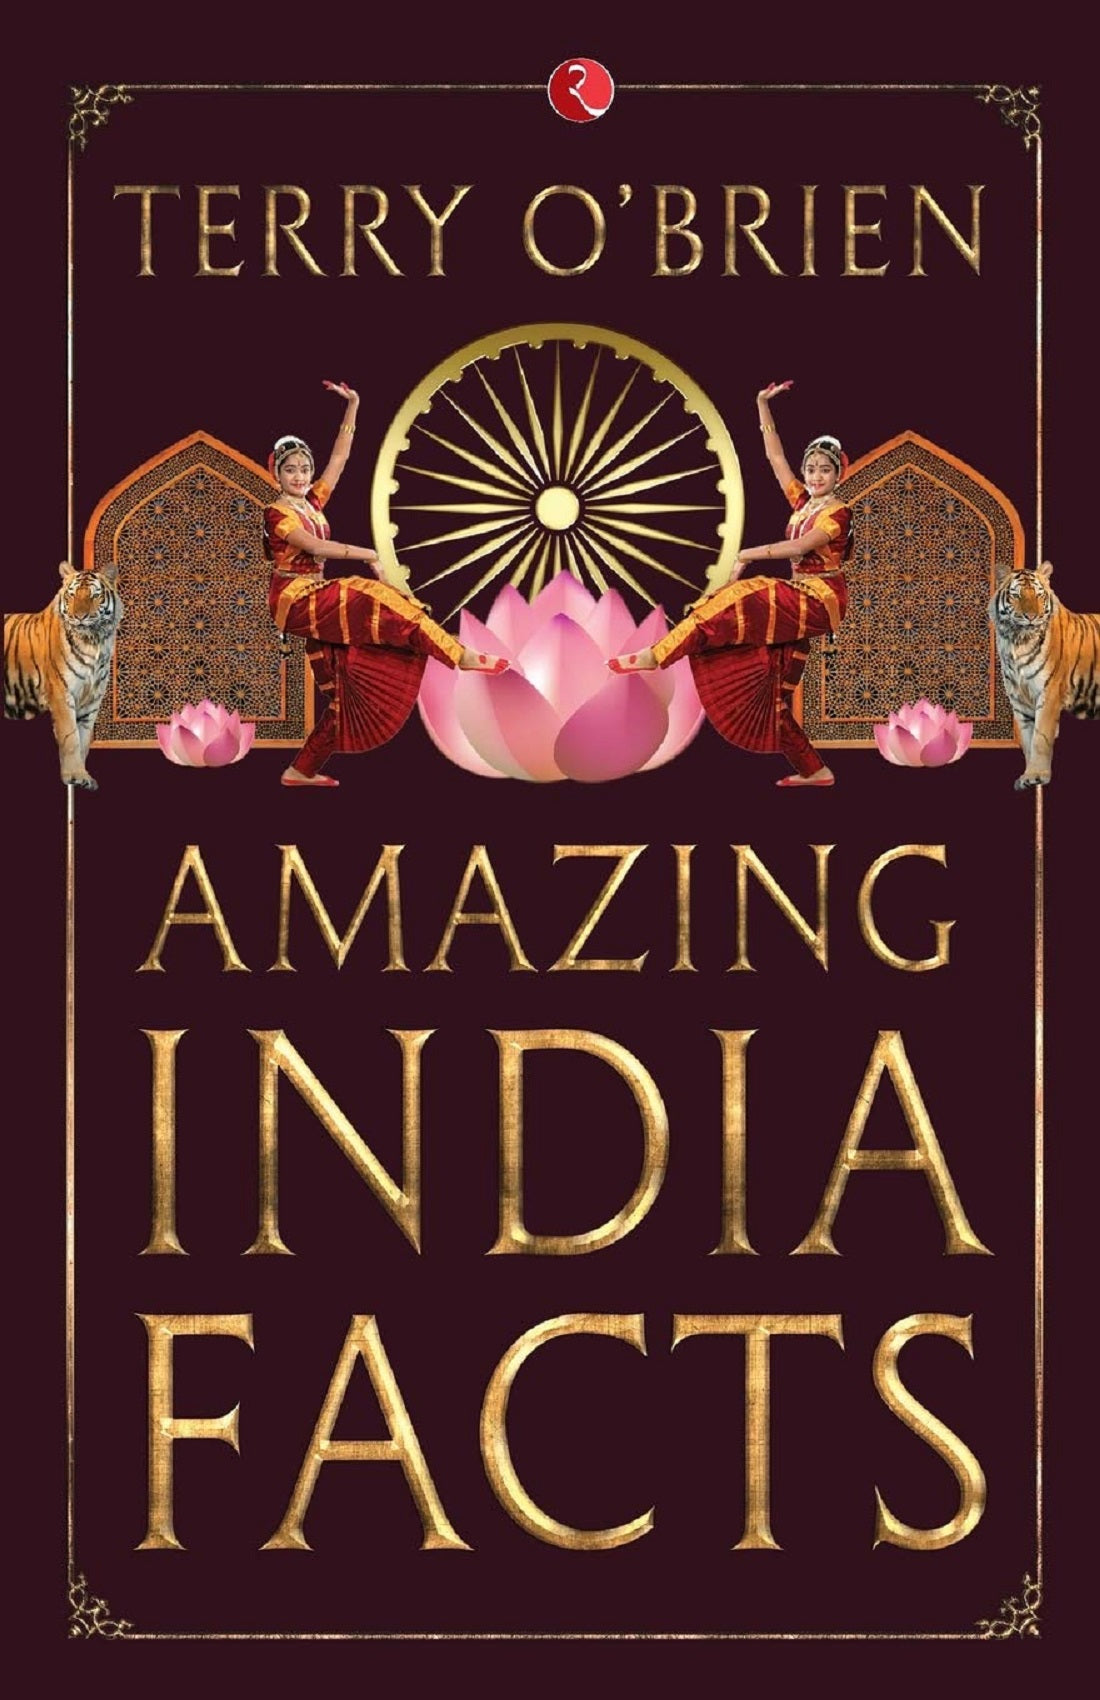 AMAZING INDIA FACTS